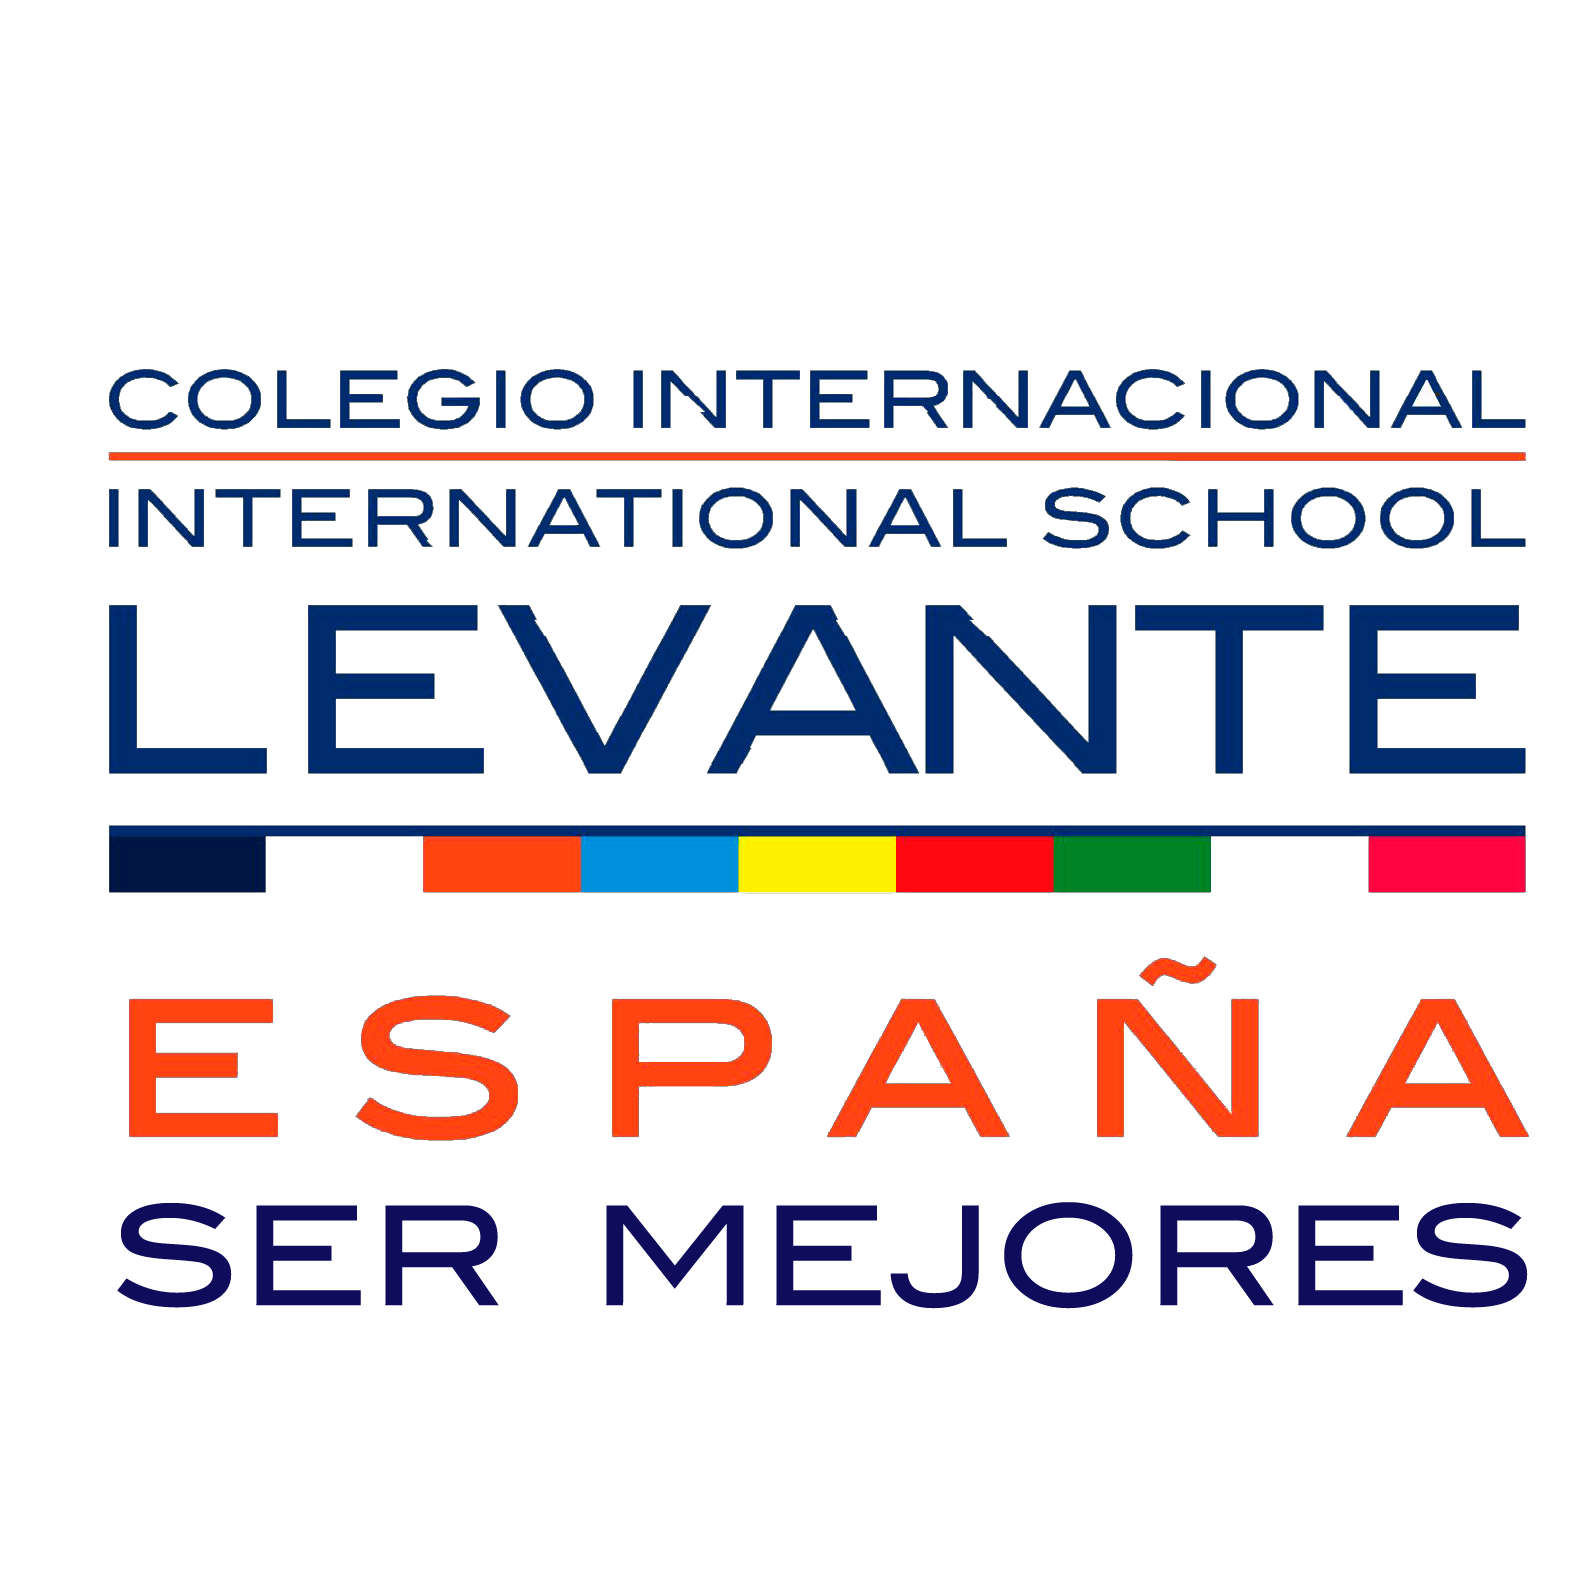 Colegio Internacional Levante